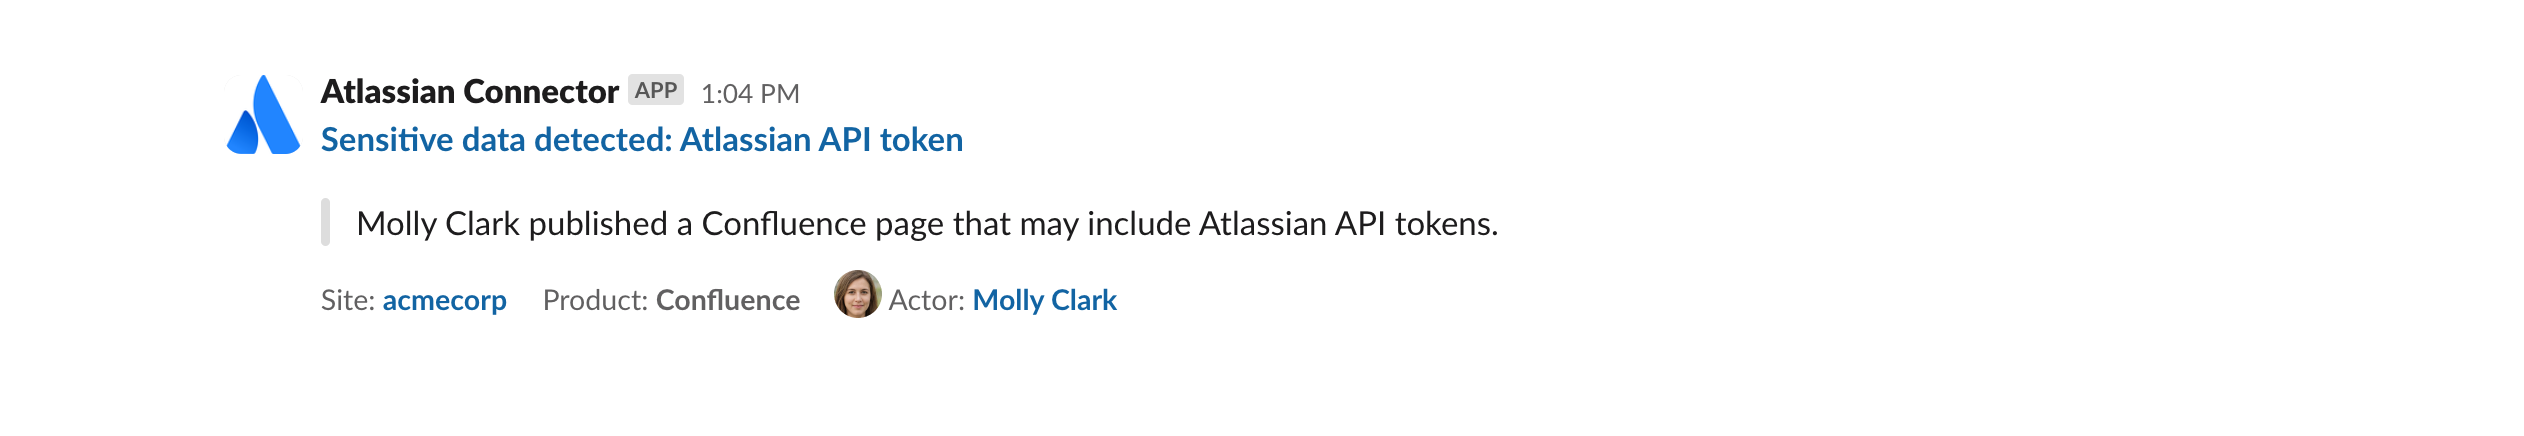 アラートの説明、アクター名、関連サイトが表示されている Slack メッセージ。 